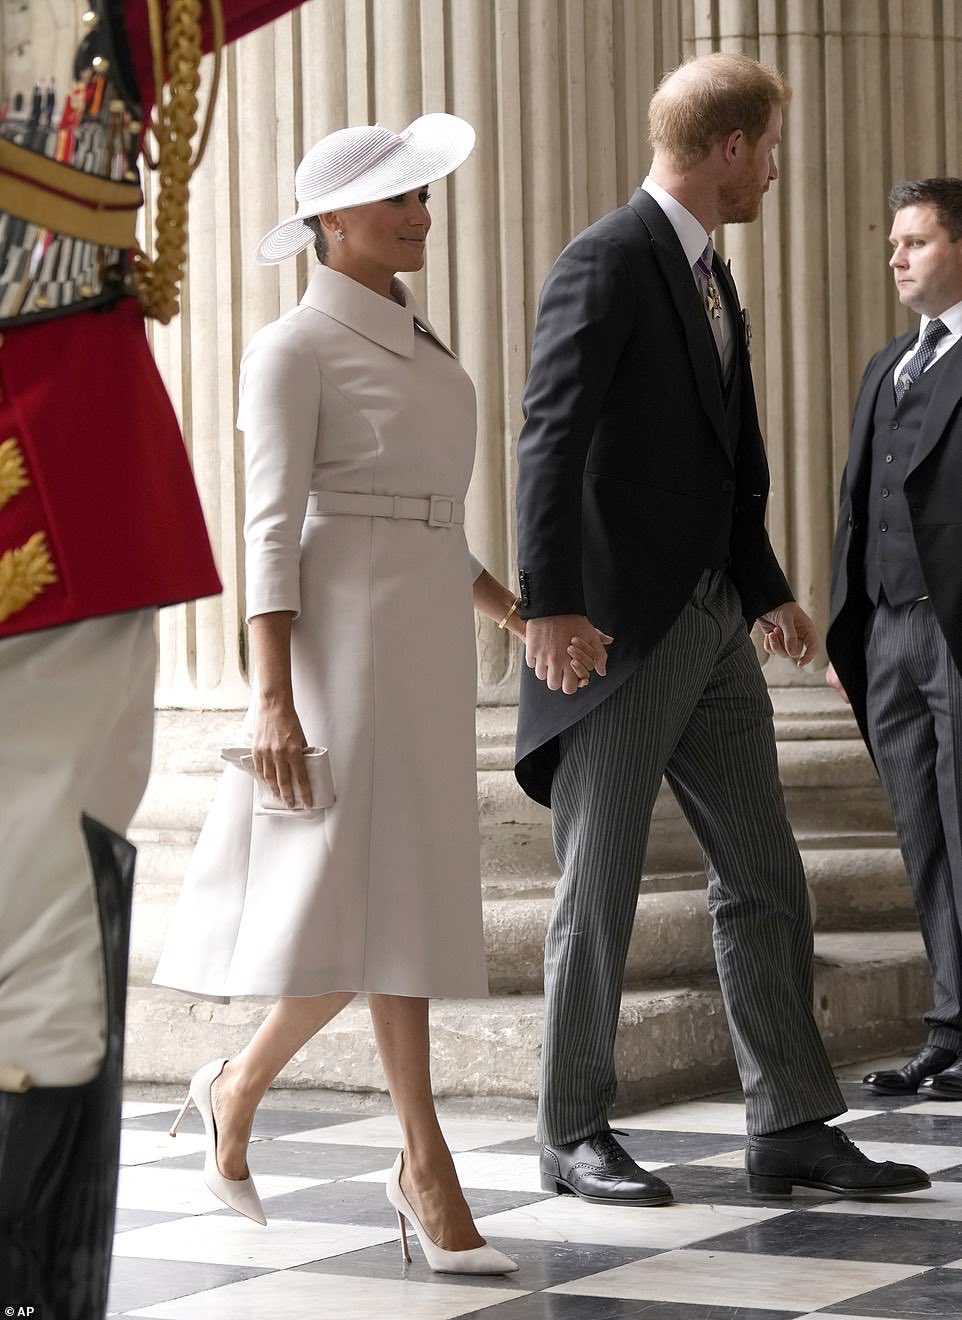 Принц Гарри и Меган Маркл улетели в США, не дожидаясь завершения праздников в честь Елизаветы II